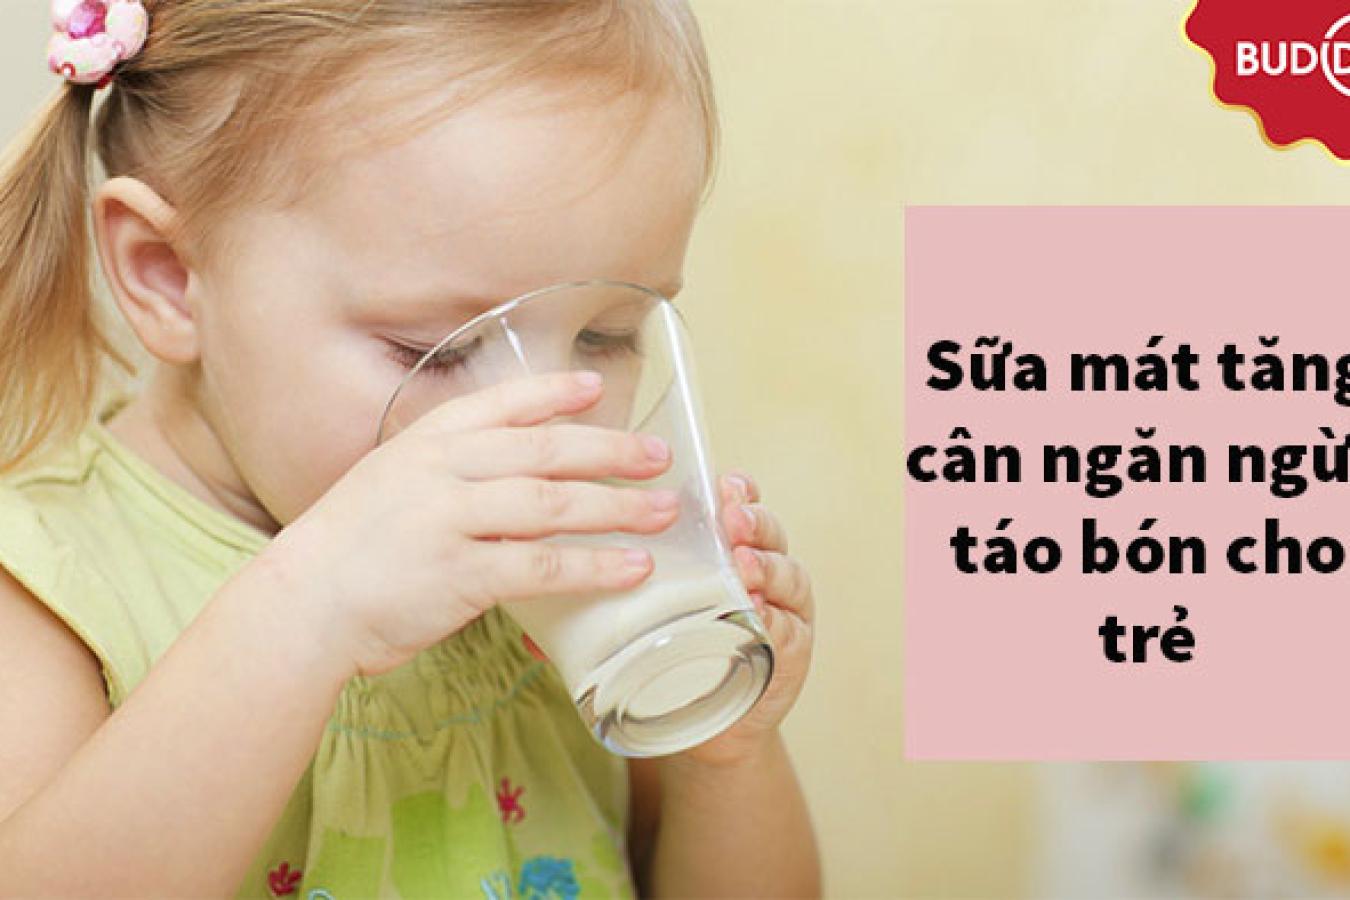 Sữa mát tăng cân, tiêu hóa tốt ngăn ngừa táo bón cho trẻ